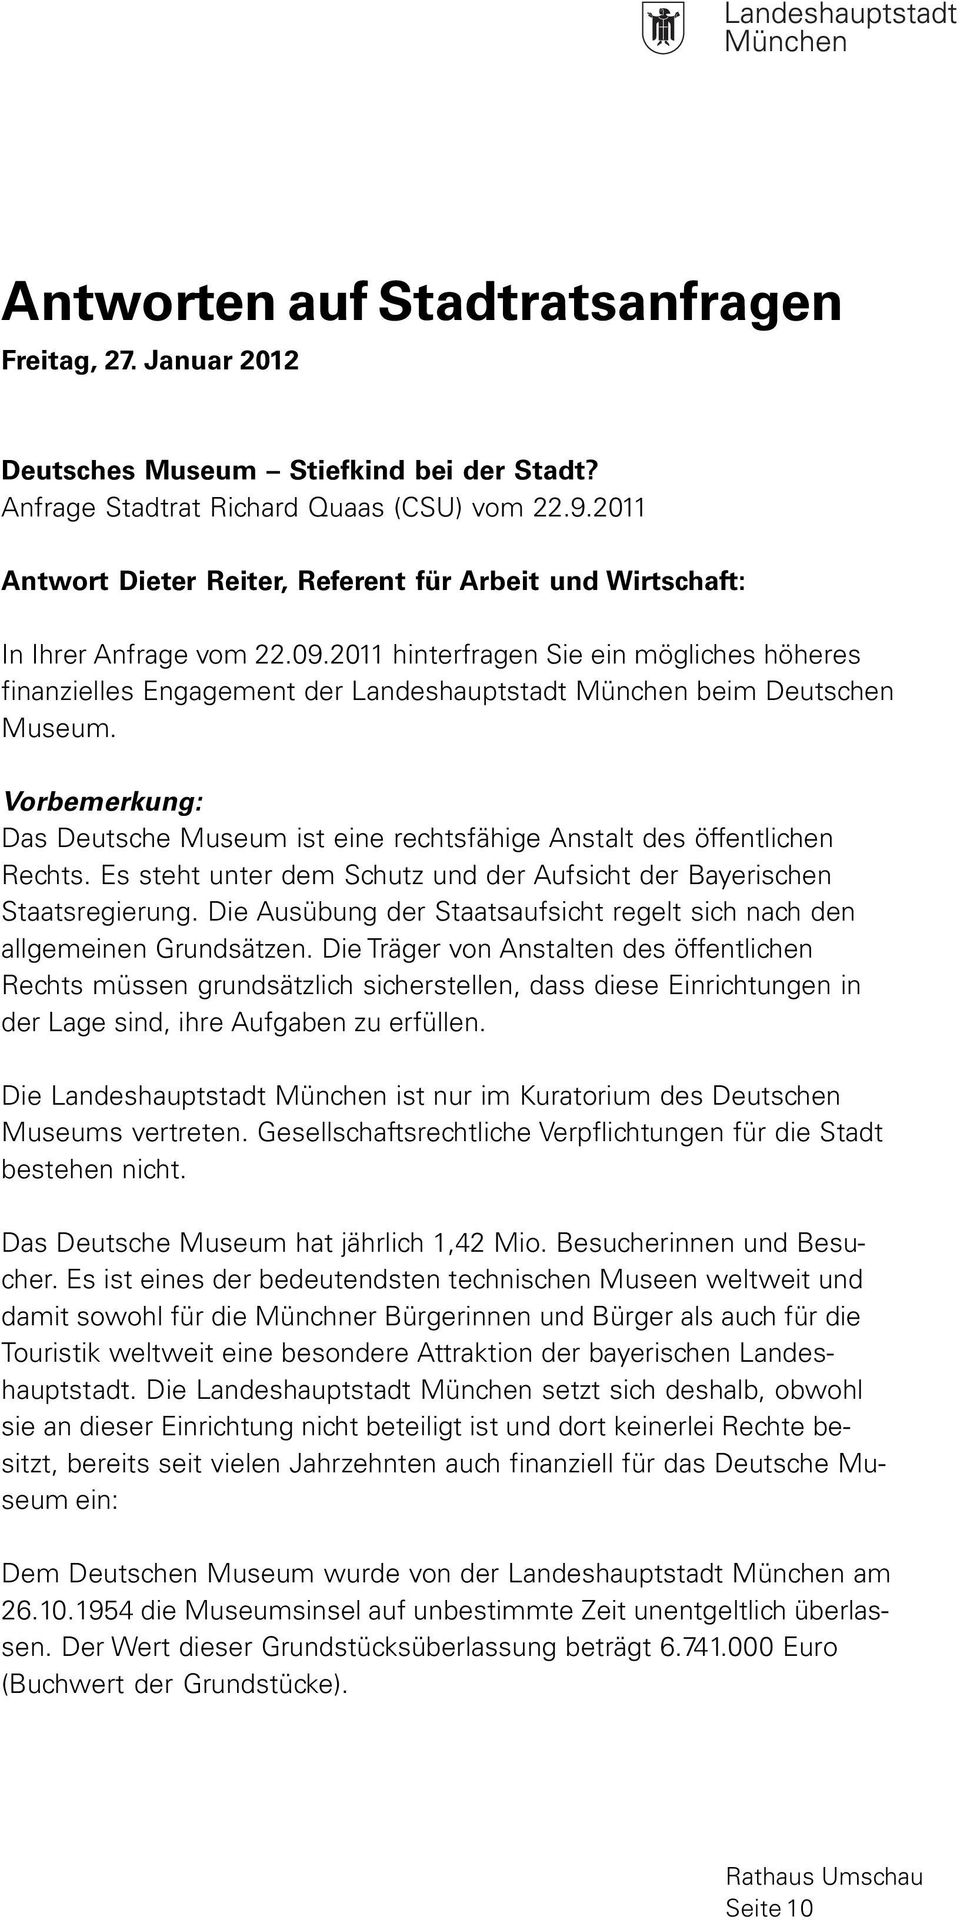 2011 hinterfragen Sie ein mögliches höheres finanzielles Engagement der Landeshauptstadt München beim Deutschen Museum.